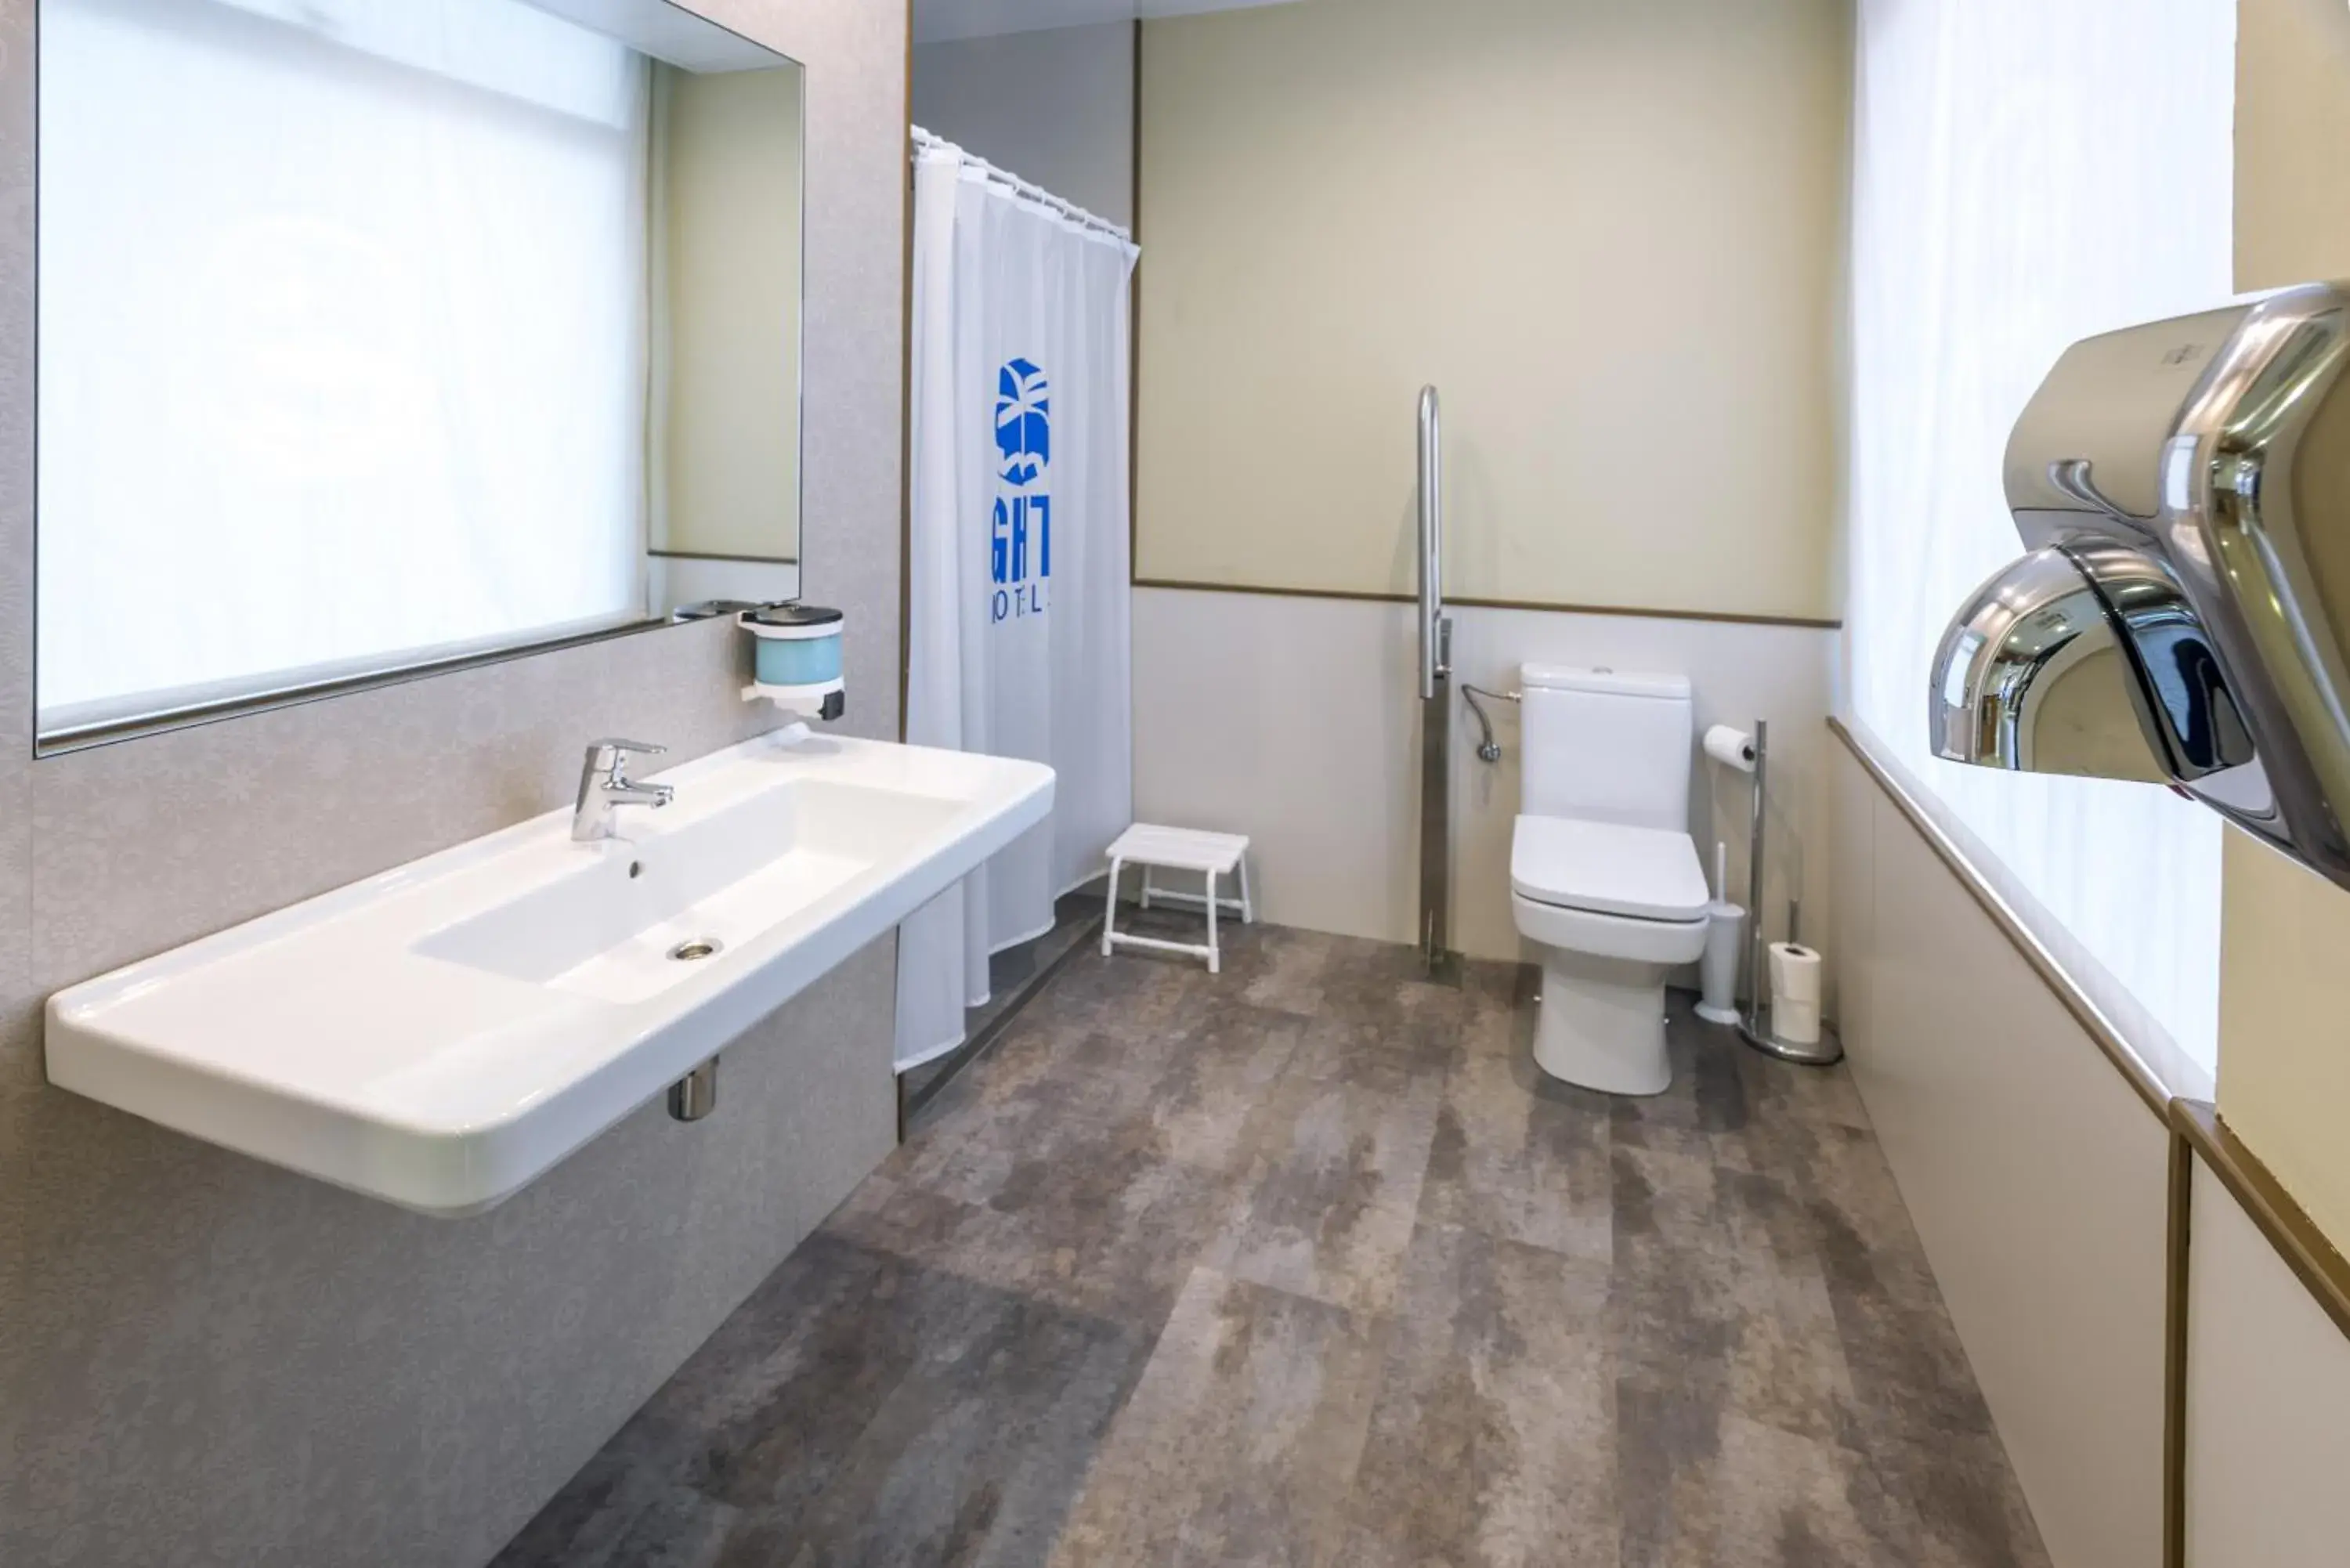 Lobby or reception, Bathroom in GHT Balmes, Hotel-Aparthotel&SPLASH